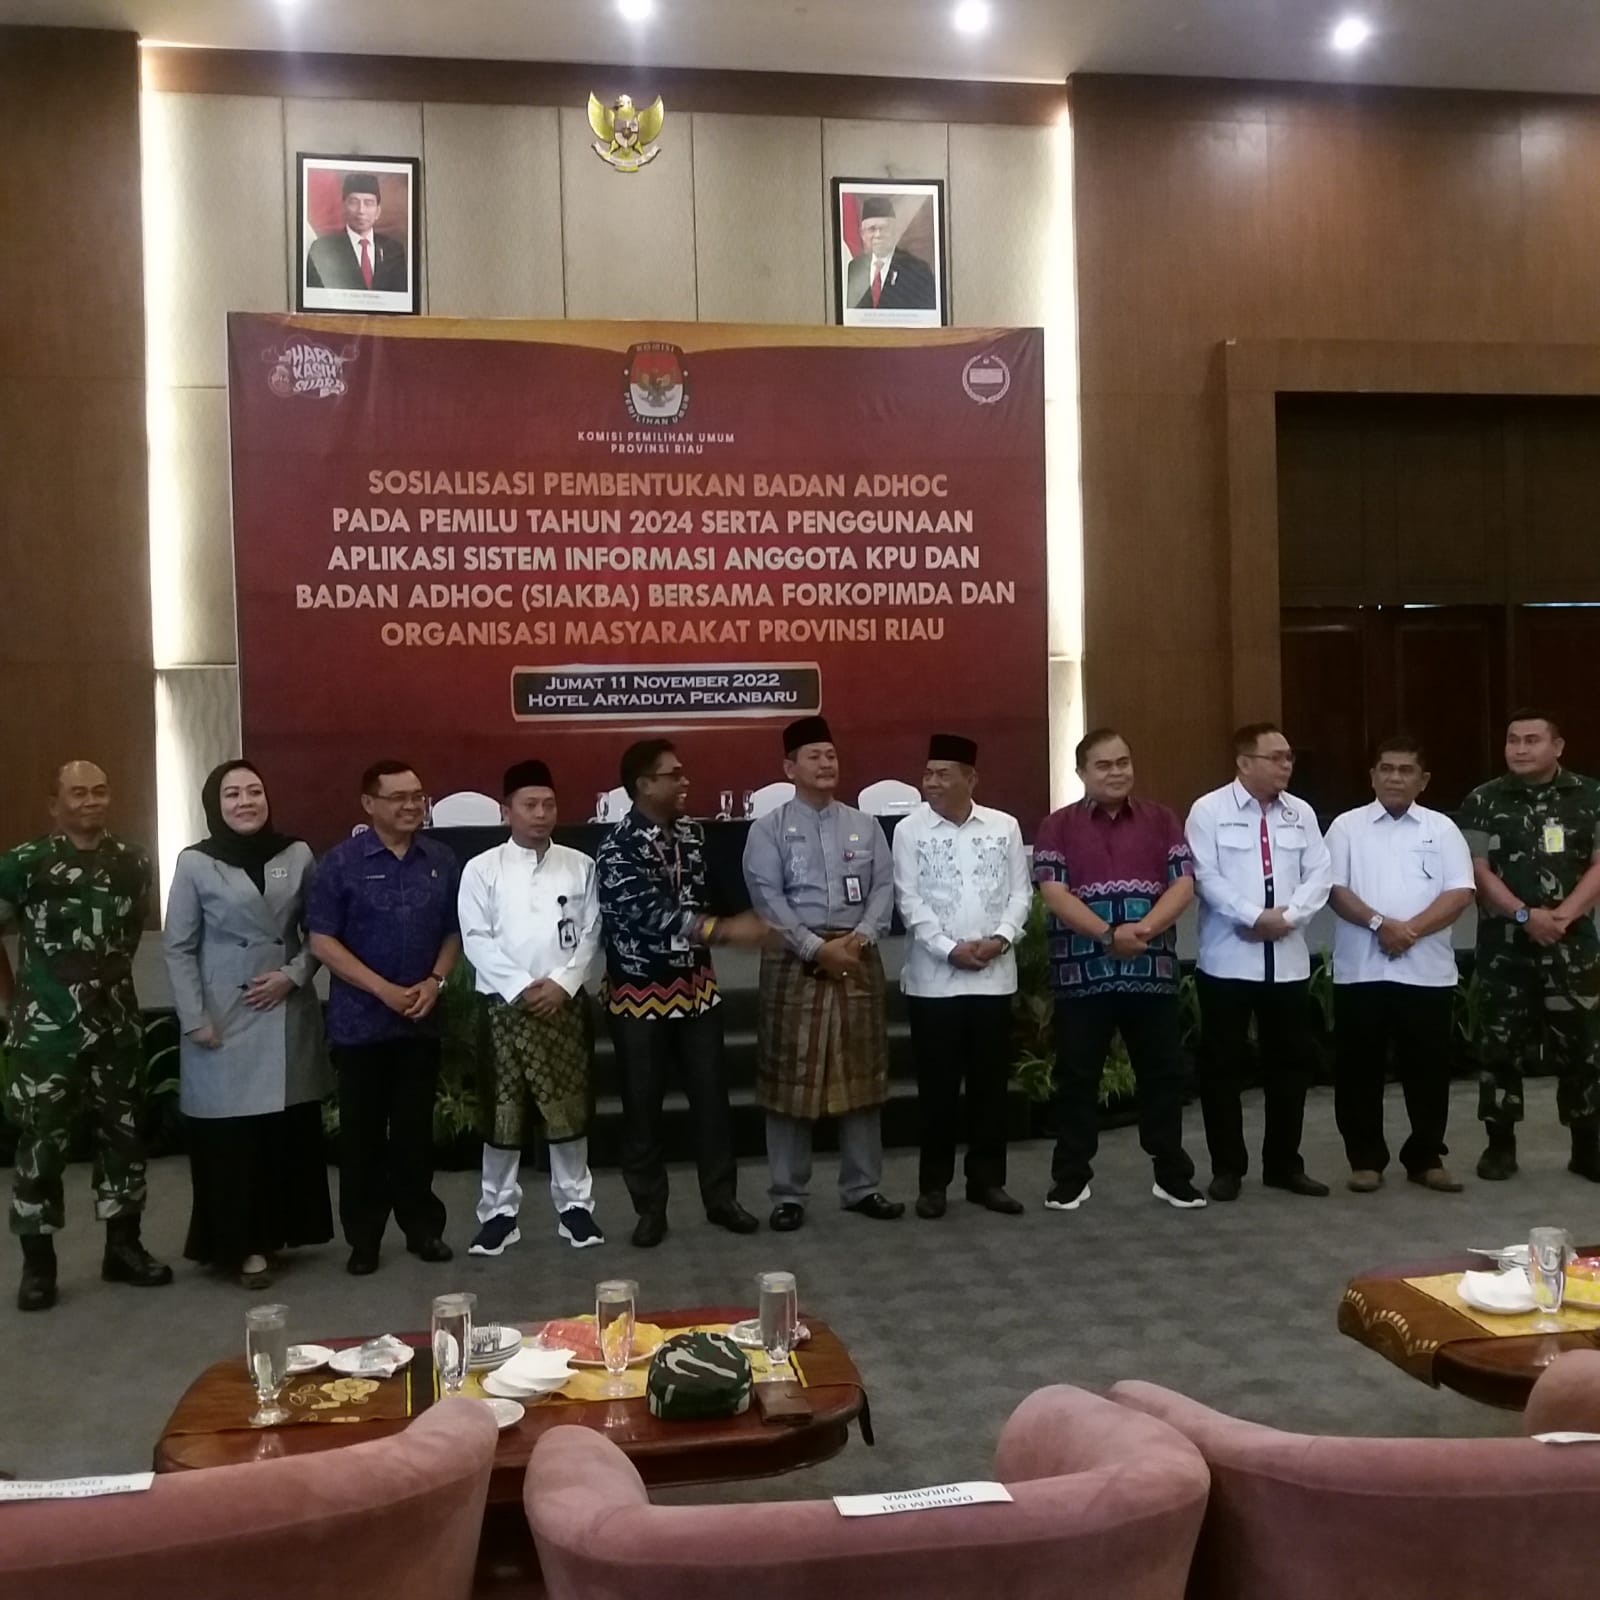 Dihadiri Ketua Komisi I DPRD Riau, KPU Resmi lounching Aplikasi Badan Adhoc, Kuota untuk Riau 208.85